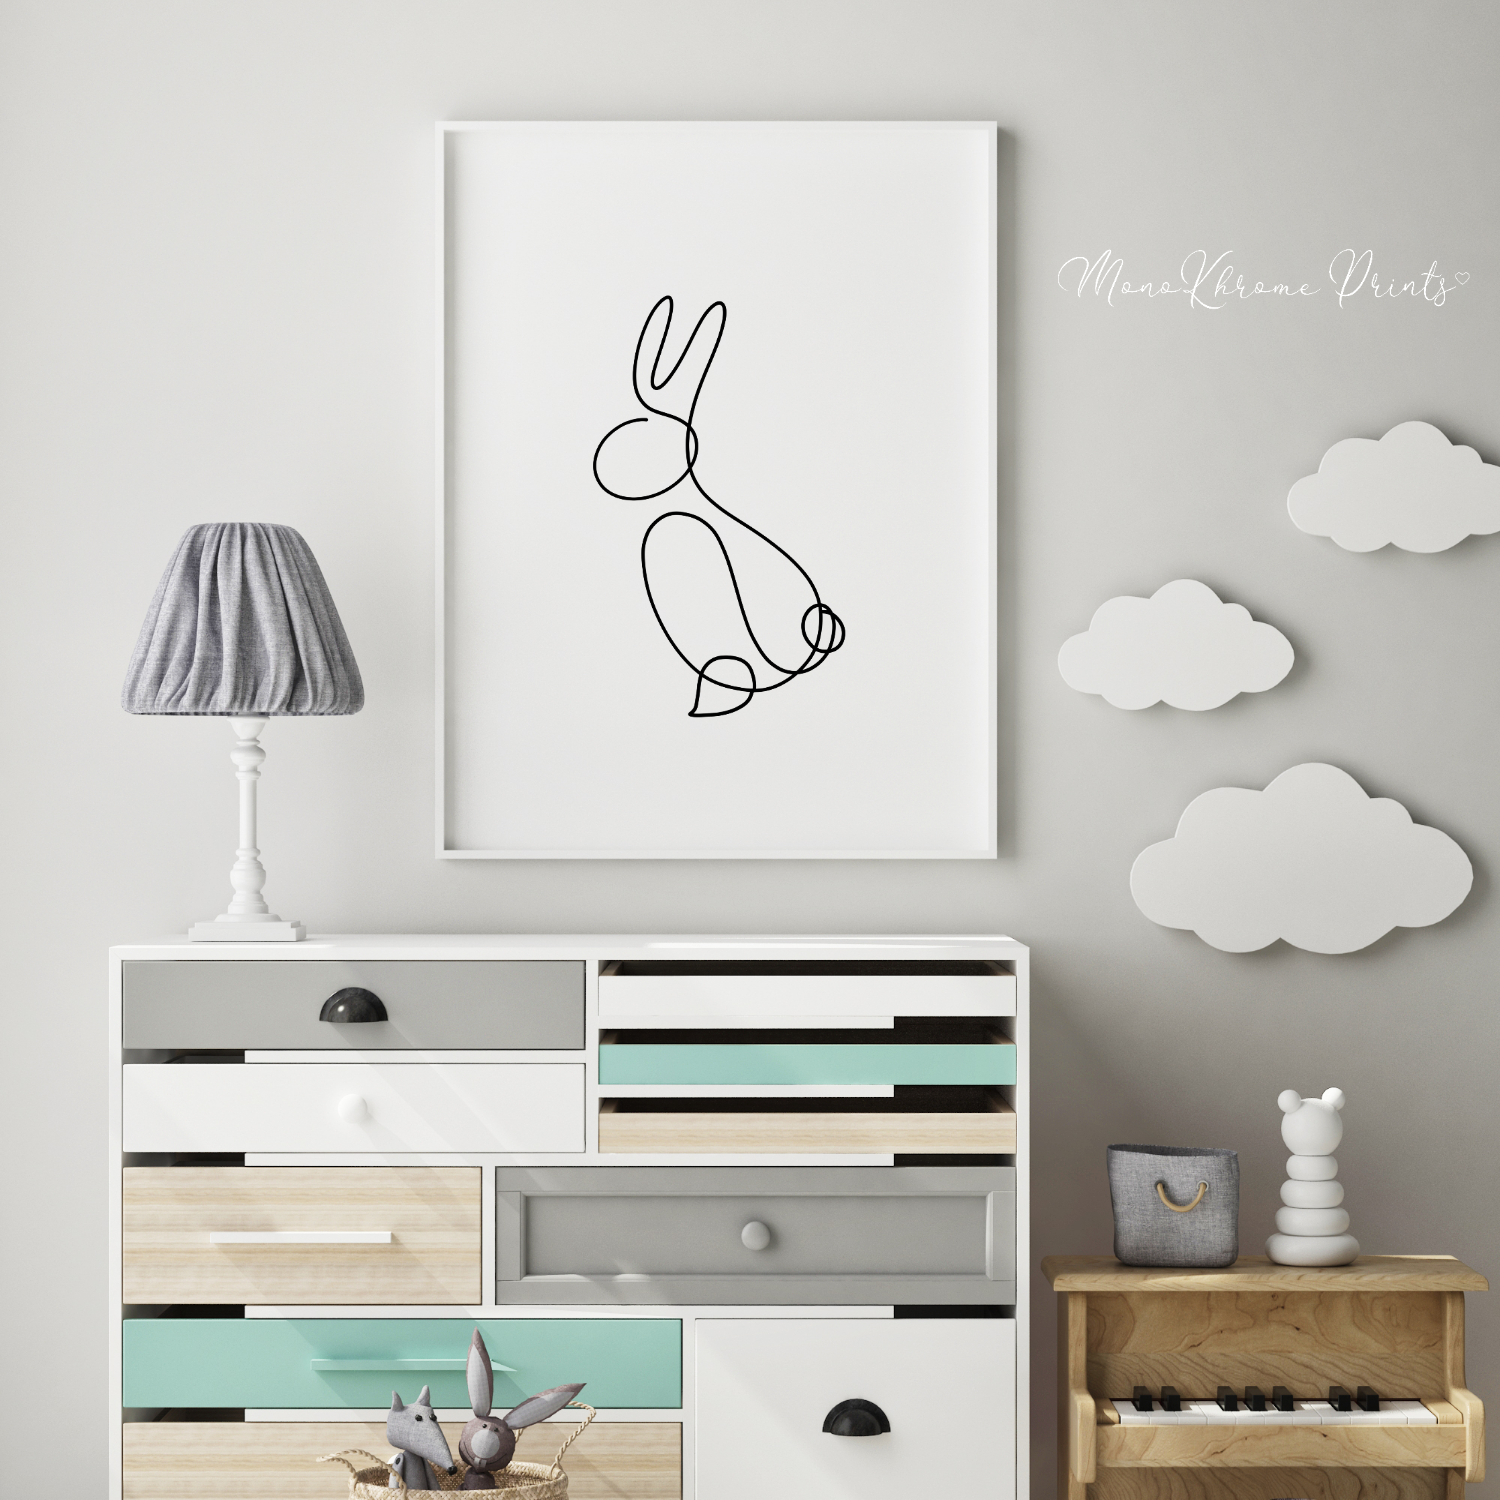 Rabbit - Affiche décorative